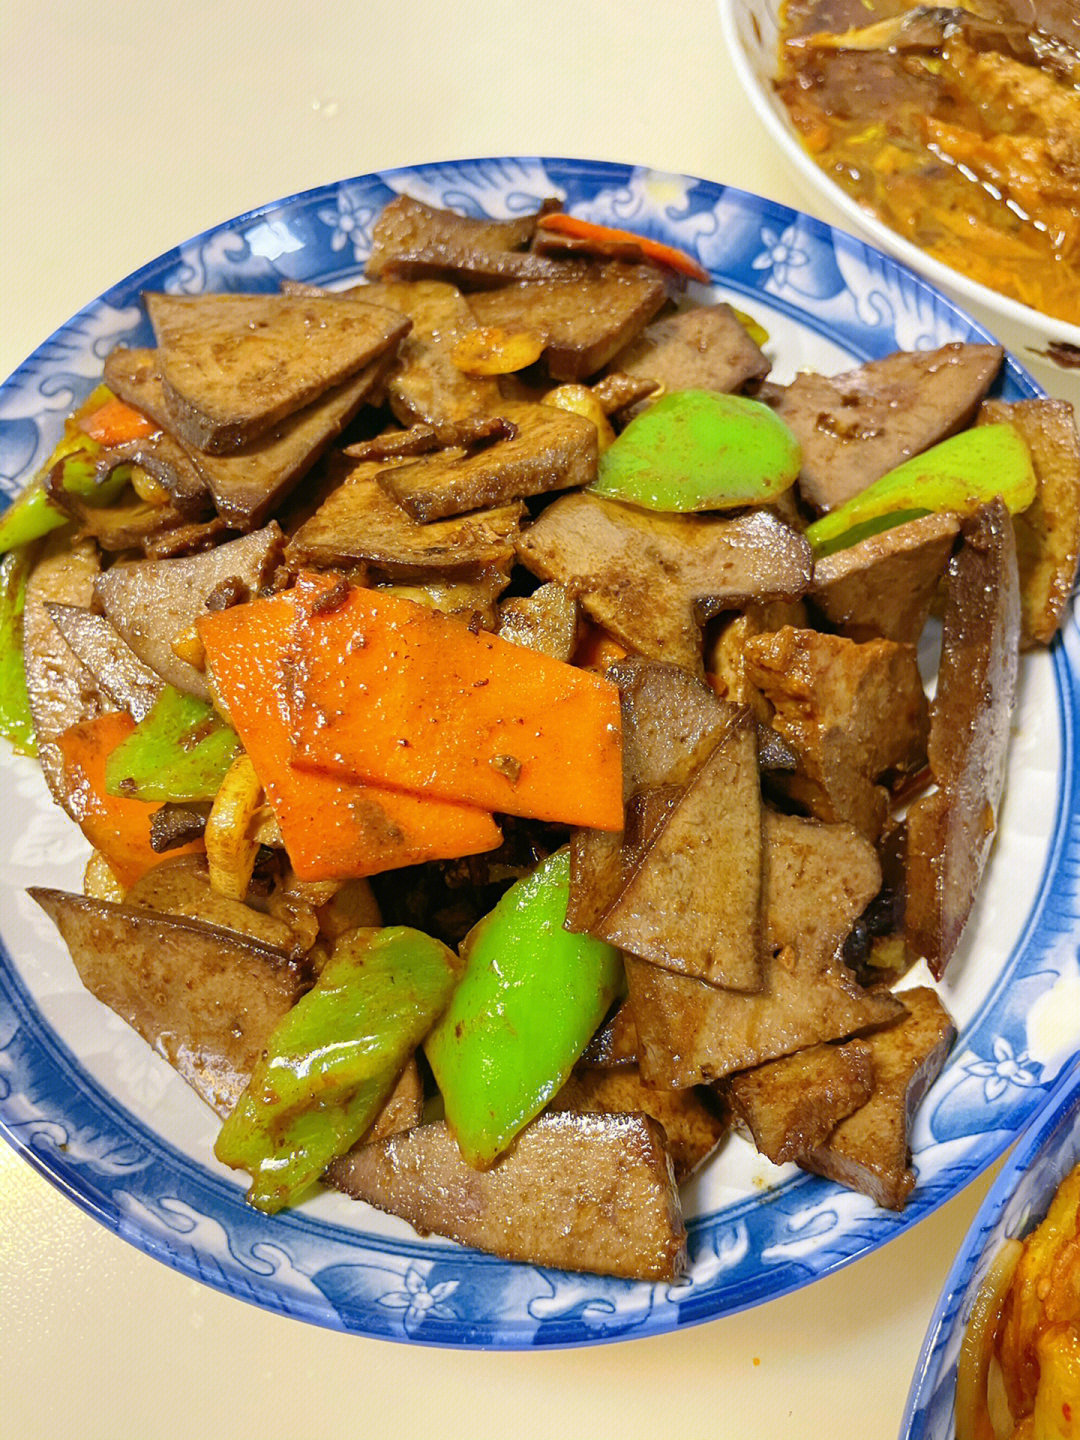 炒猪肝 干锅土豆片 苦苣拌花生米 配上大碴粥 又是香迷糊的一天